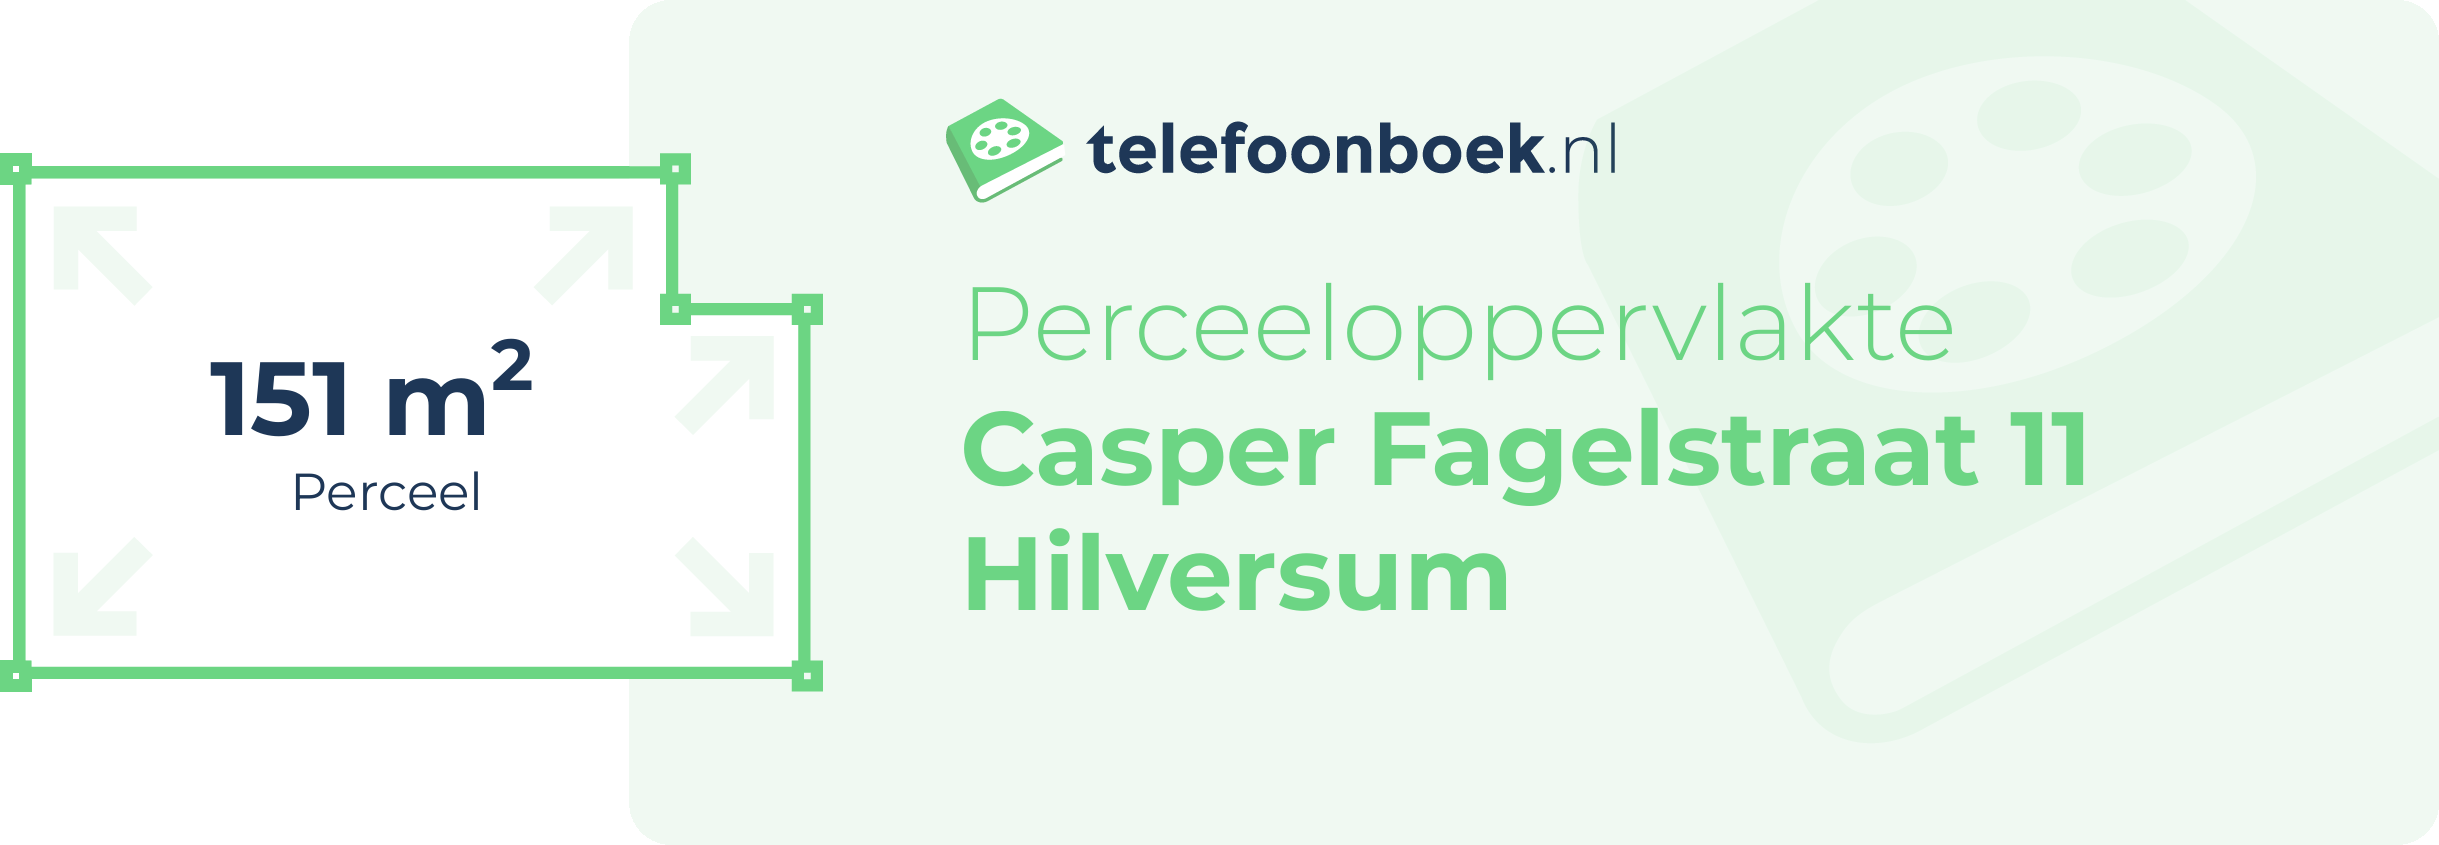 Perceeloppervlakte Casper Fagelstraat 11 Hilversum